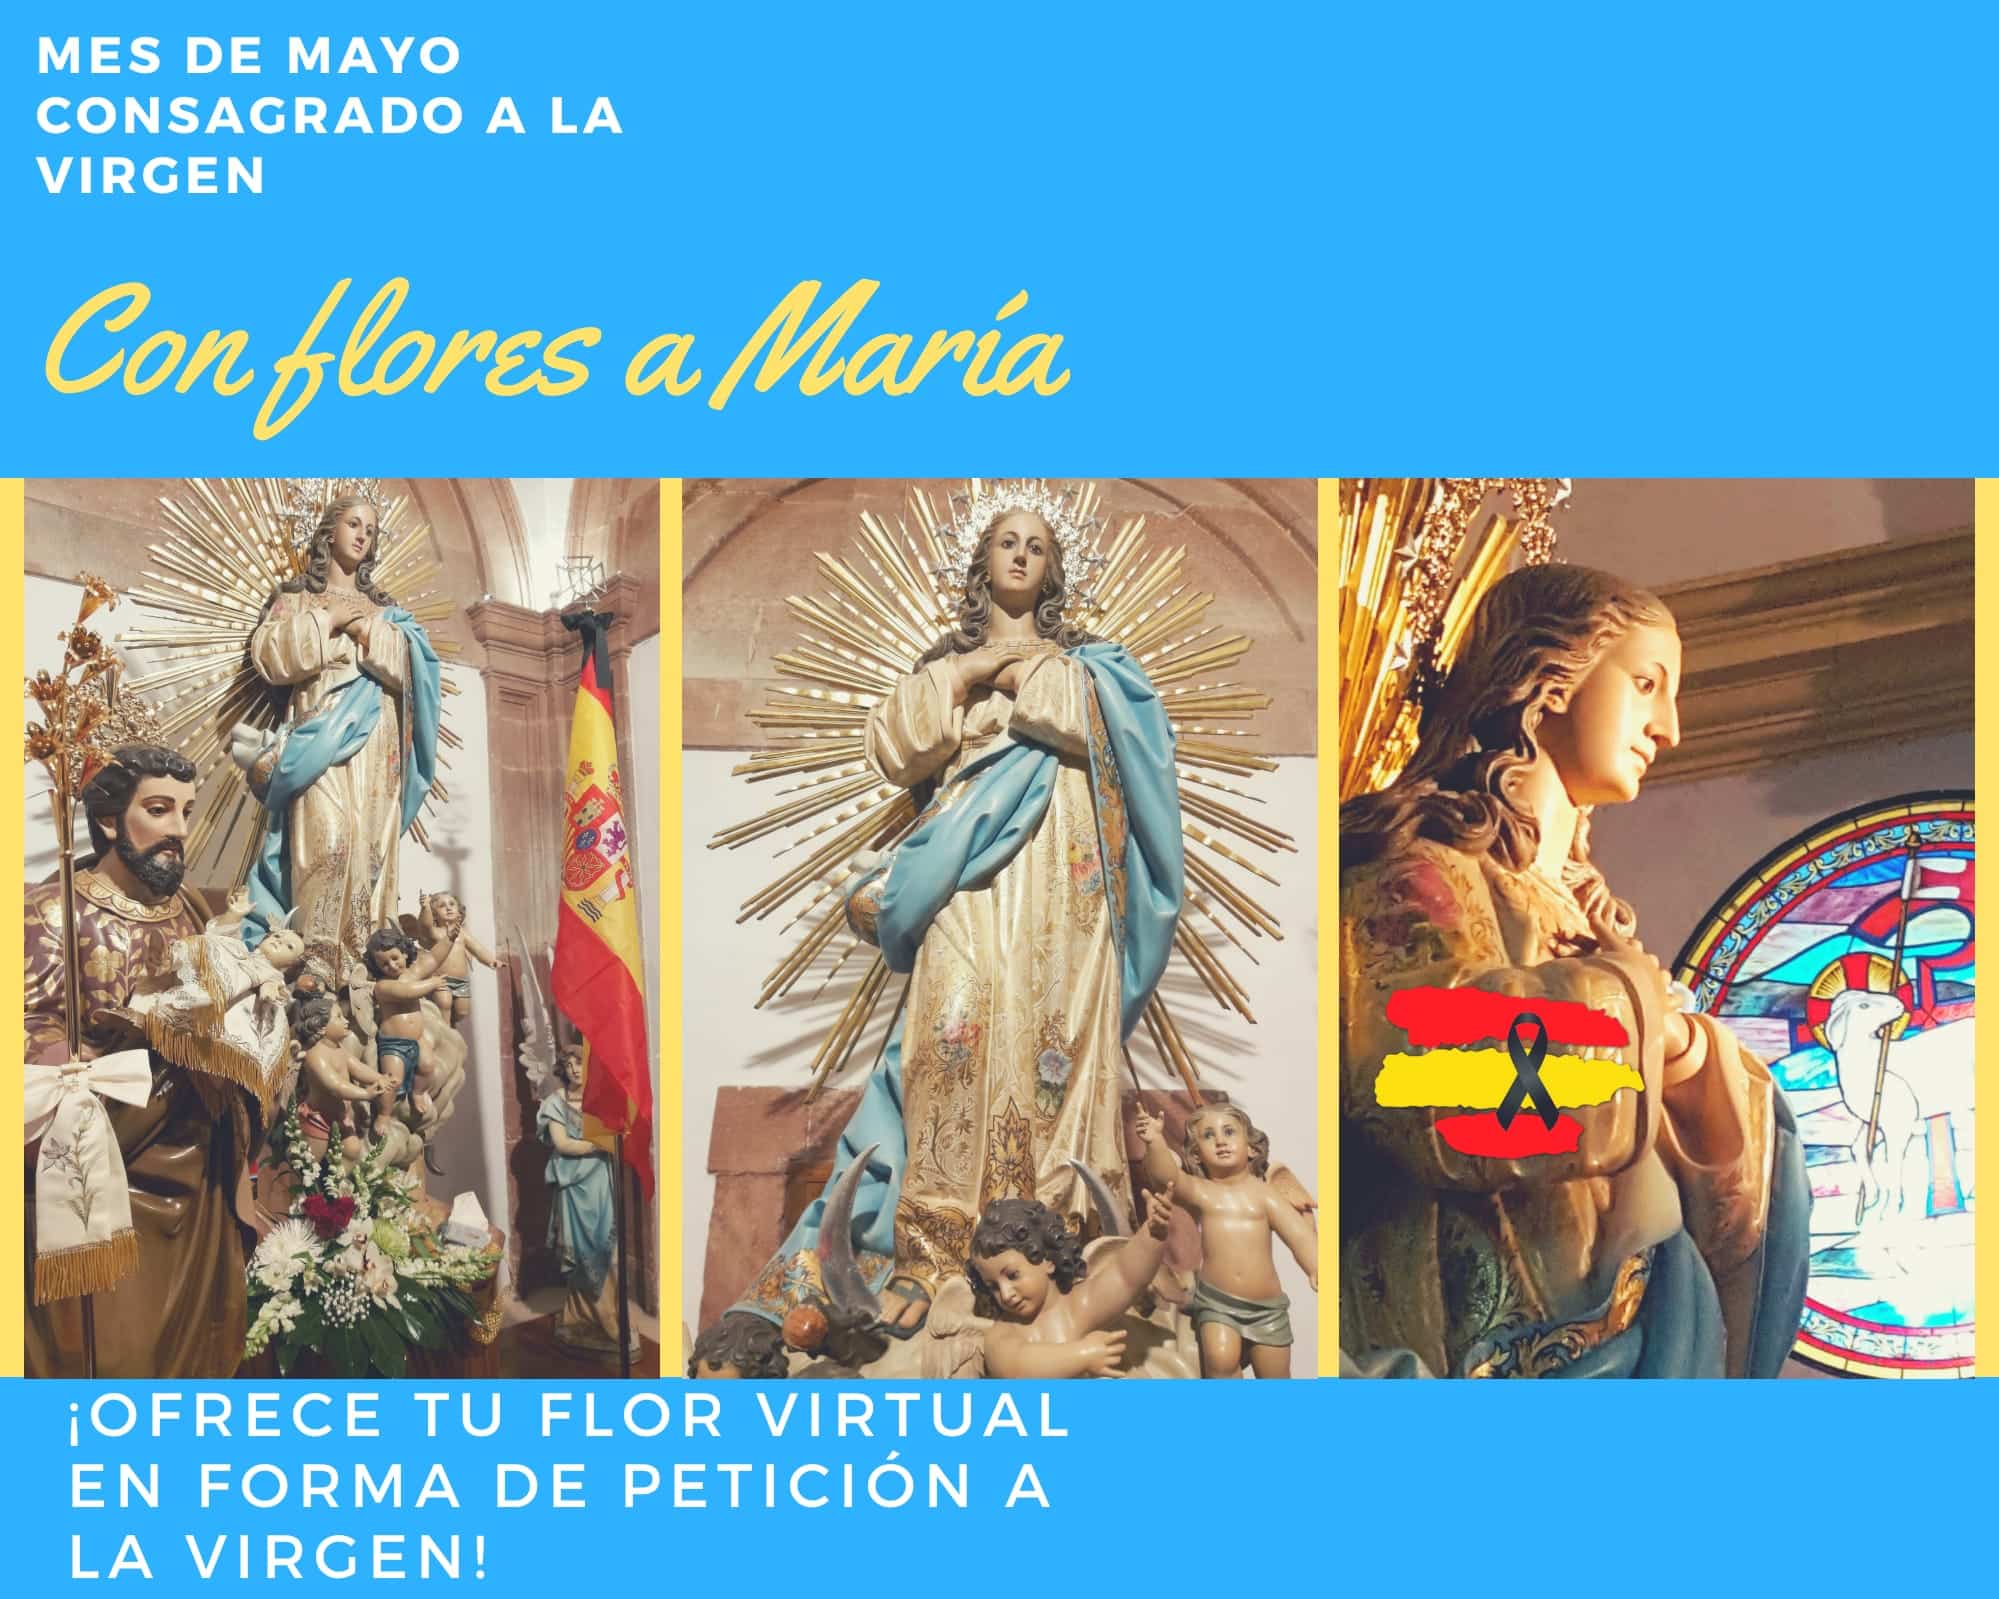 La parroquia Inmaculada Concepción inicia un mes de mayo dedicado a María 14